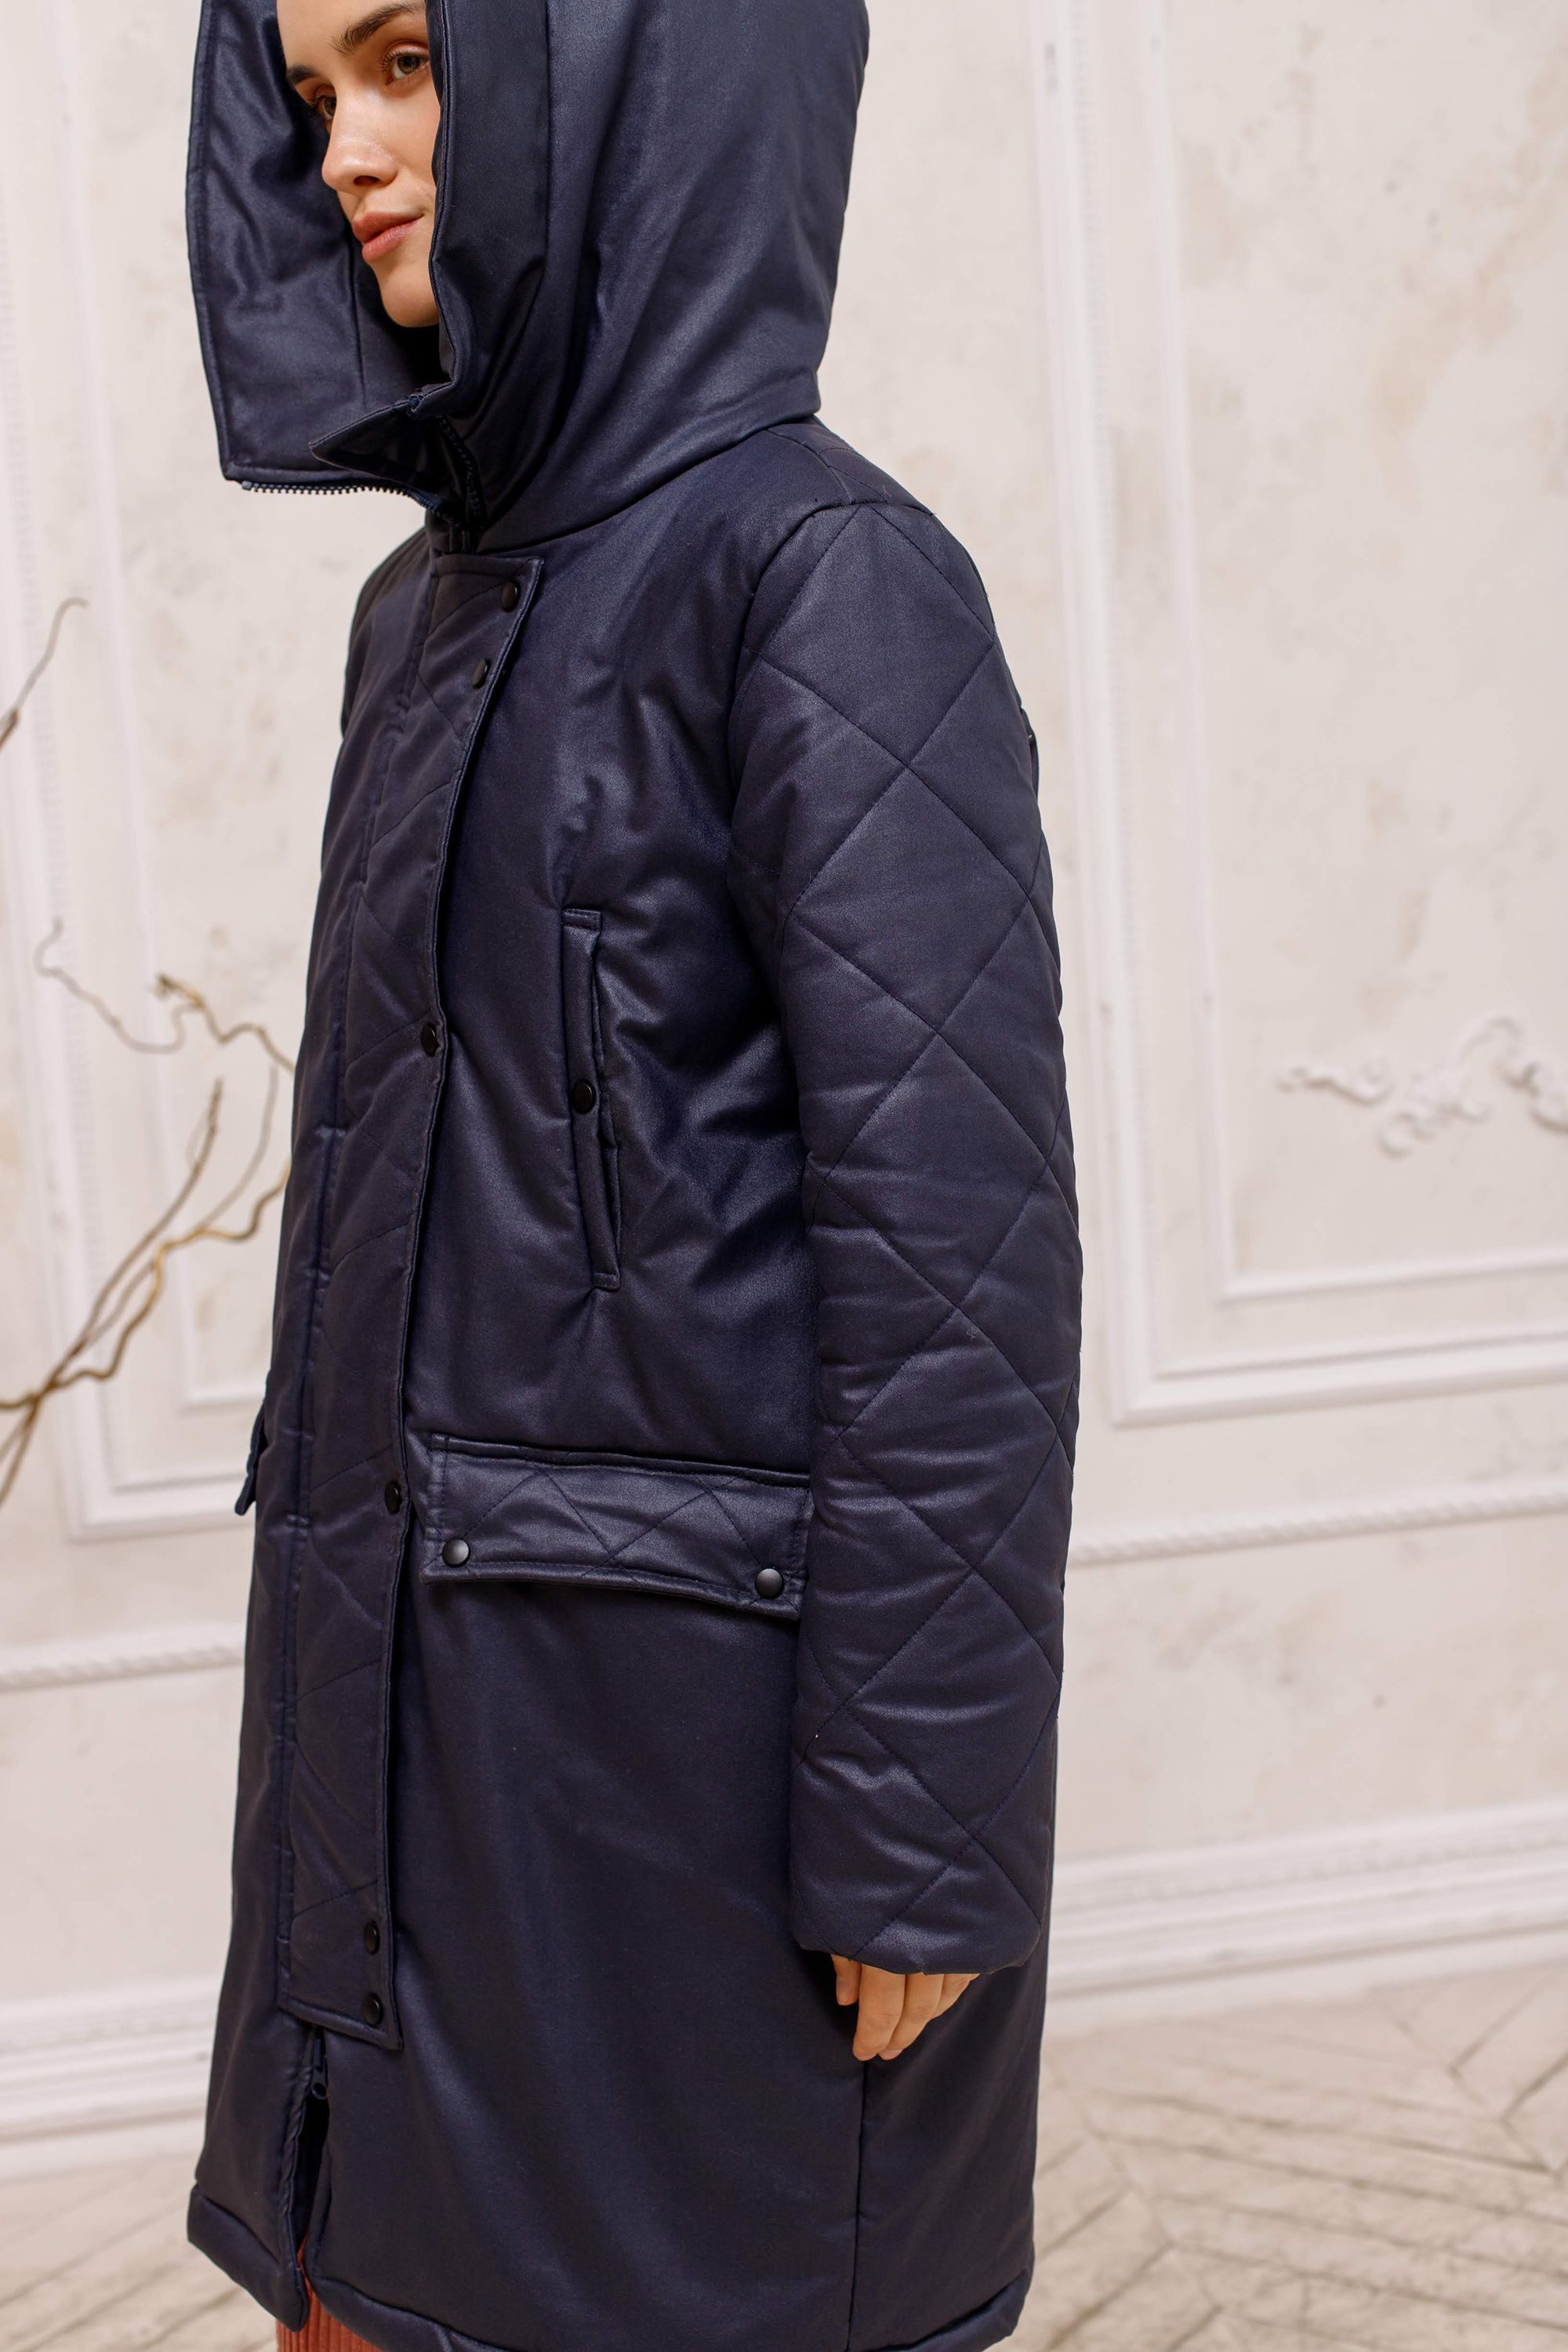 Parka jacket, pattern №399 buy on-line